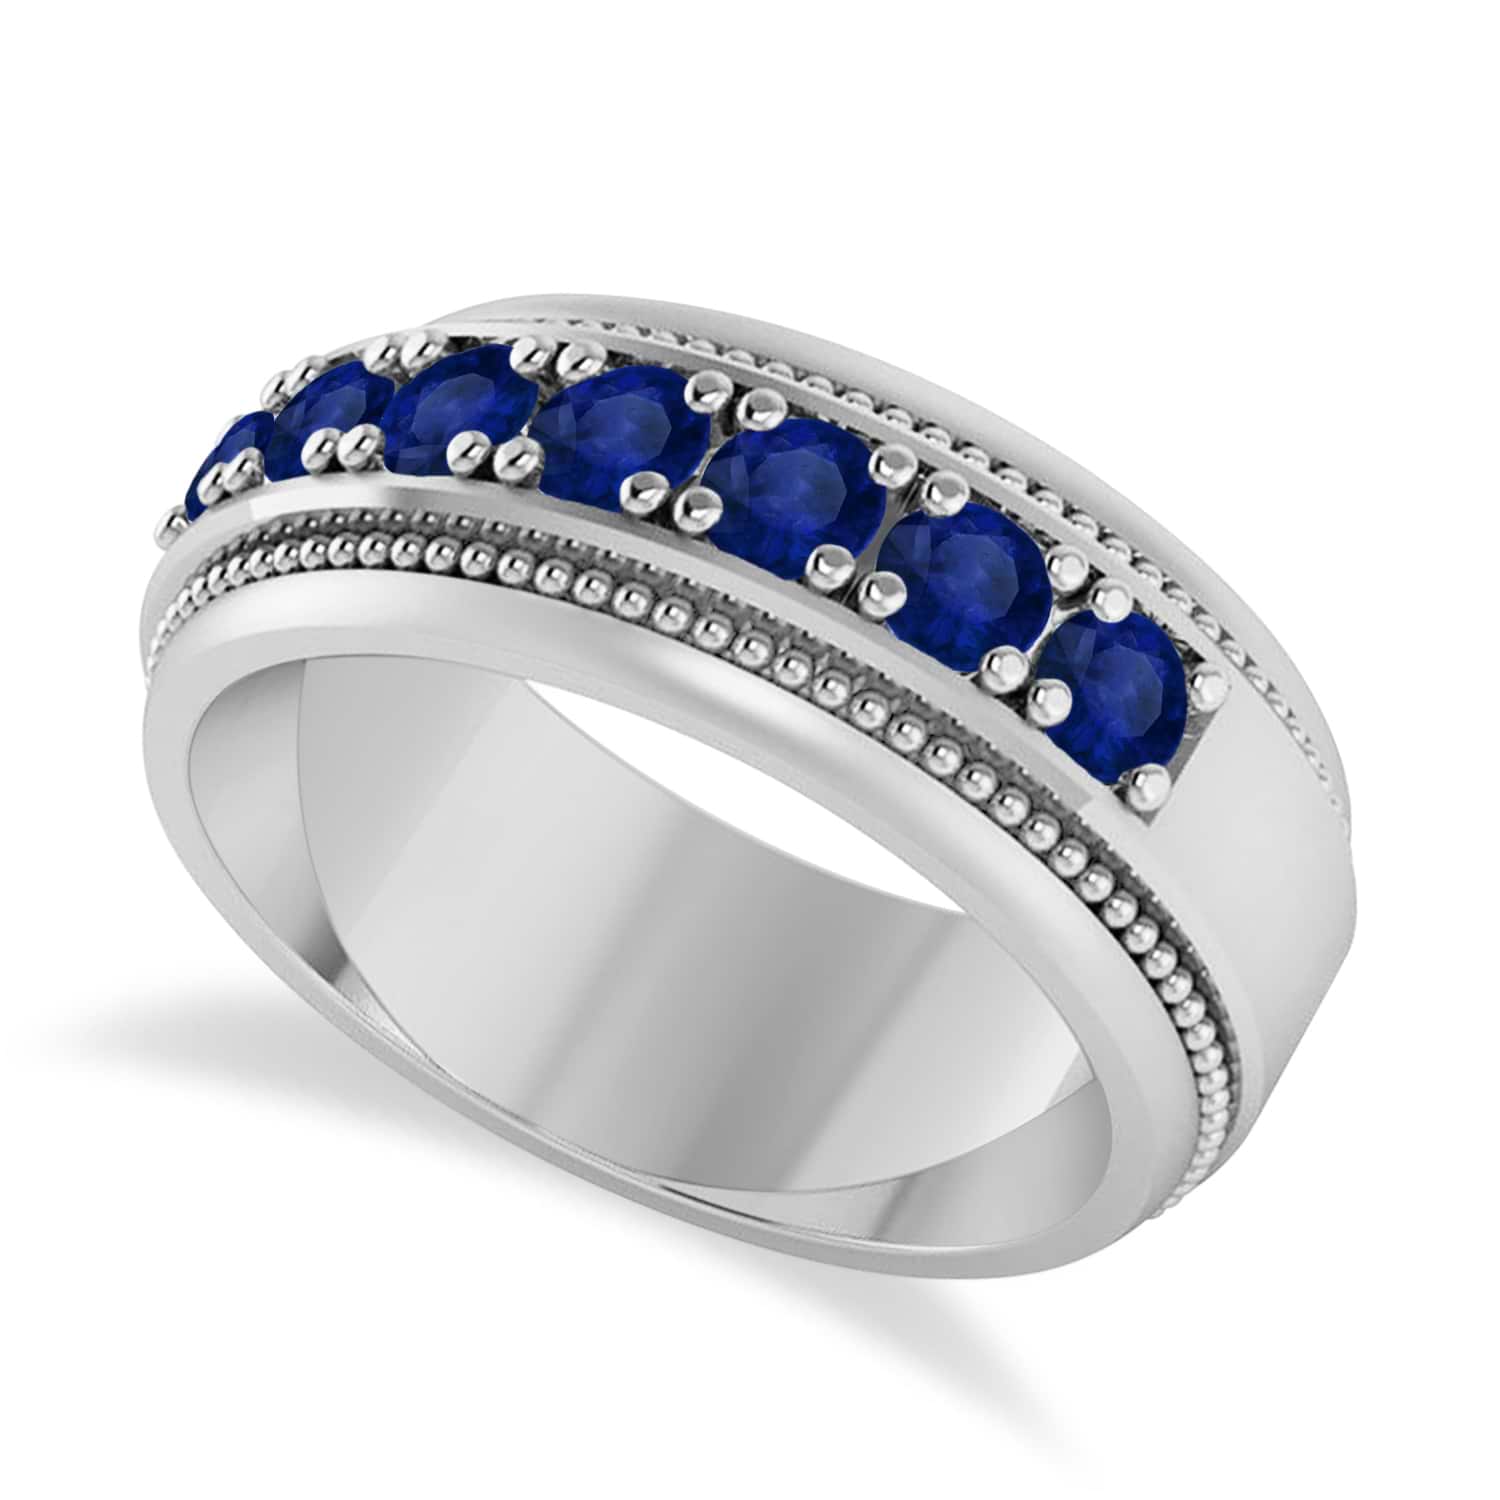 Men's Seven-Stone Blue Sapphire Milgrain Ring 14k White Gold (1.05 ctw)